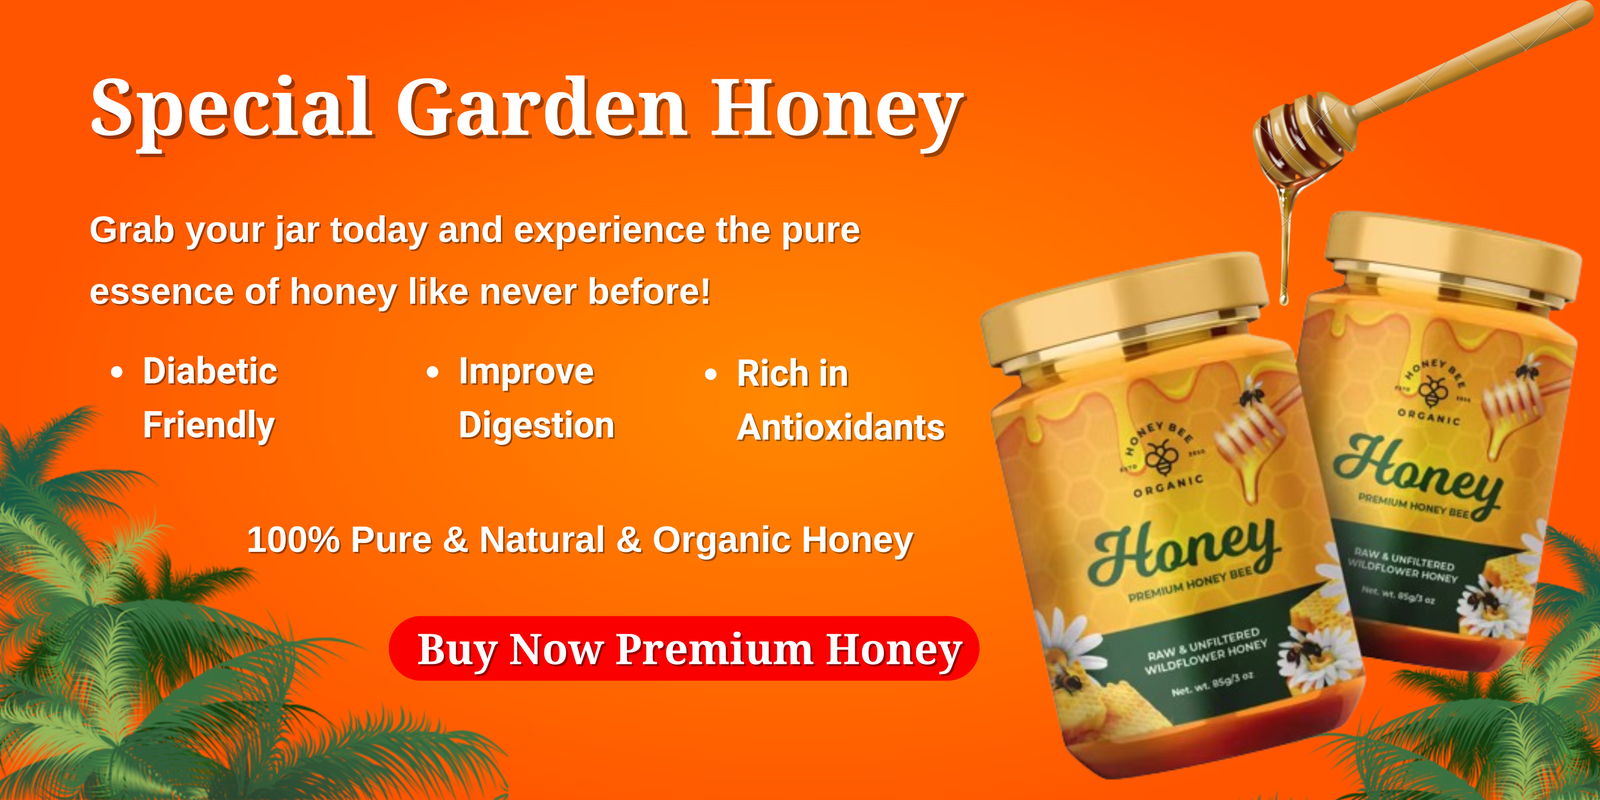 Buy Now Premium Honey (2)